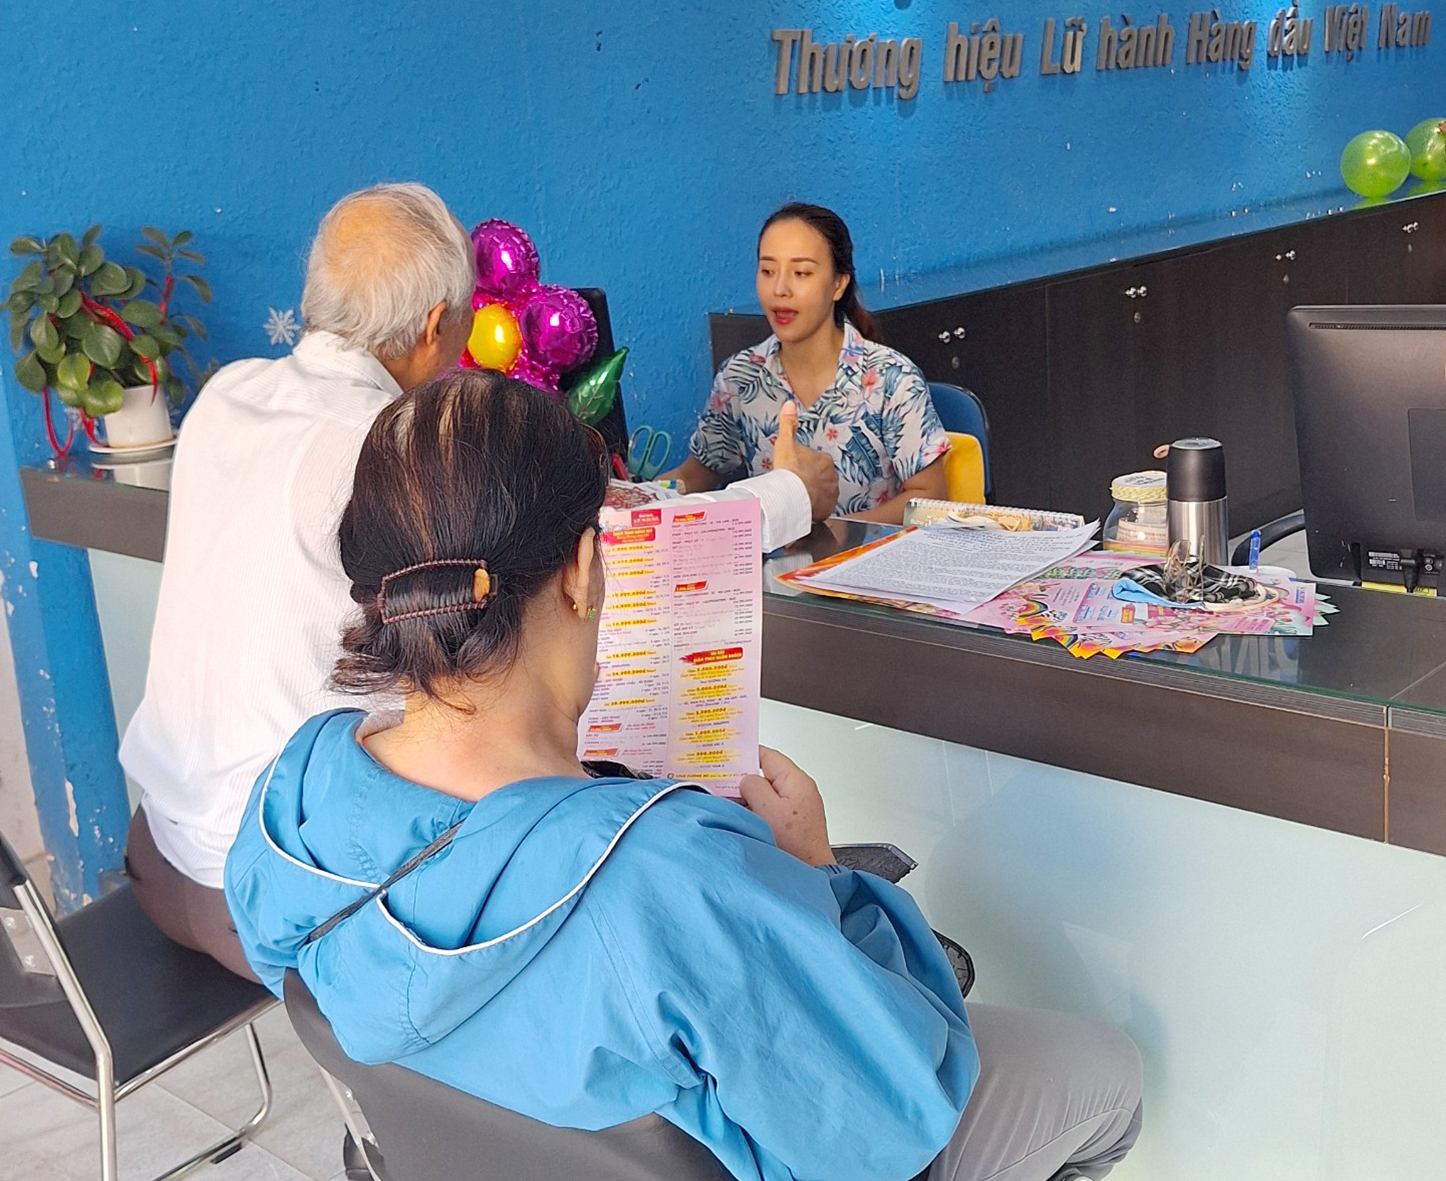 Du khách tìm hiểu tour hè tại Chi nhánh Saigontourist Vũng Tàu nhân sự kiện “Party vào hạ”.